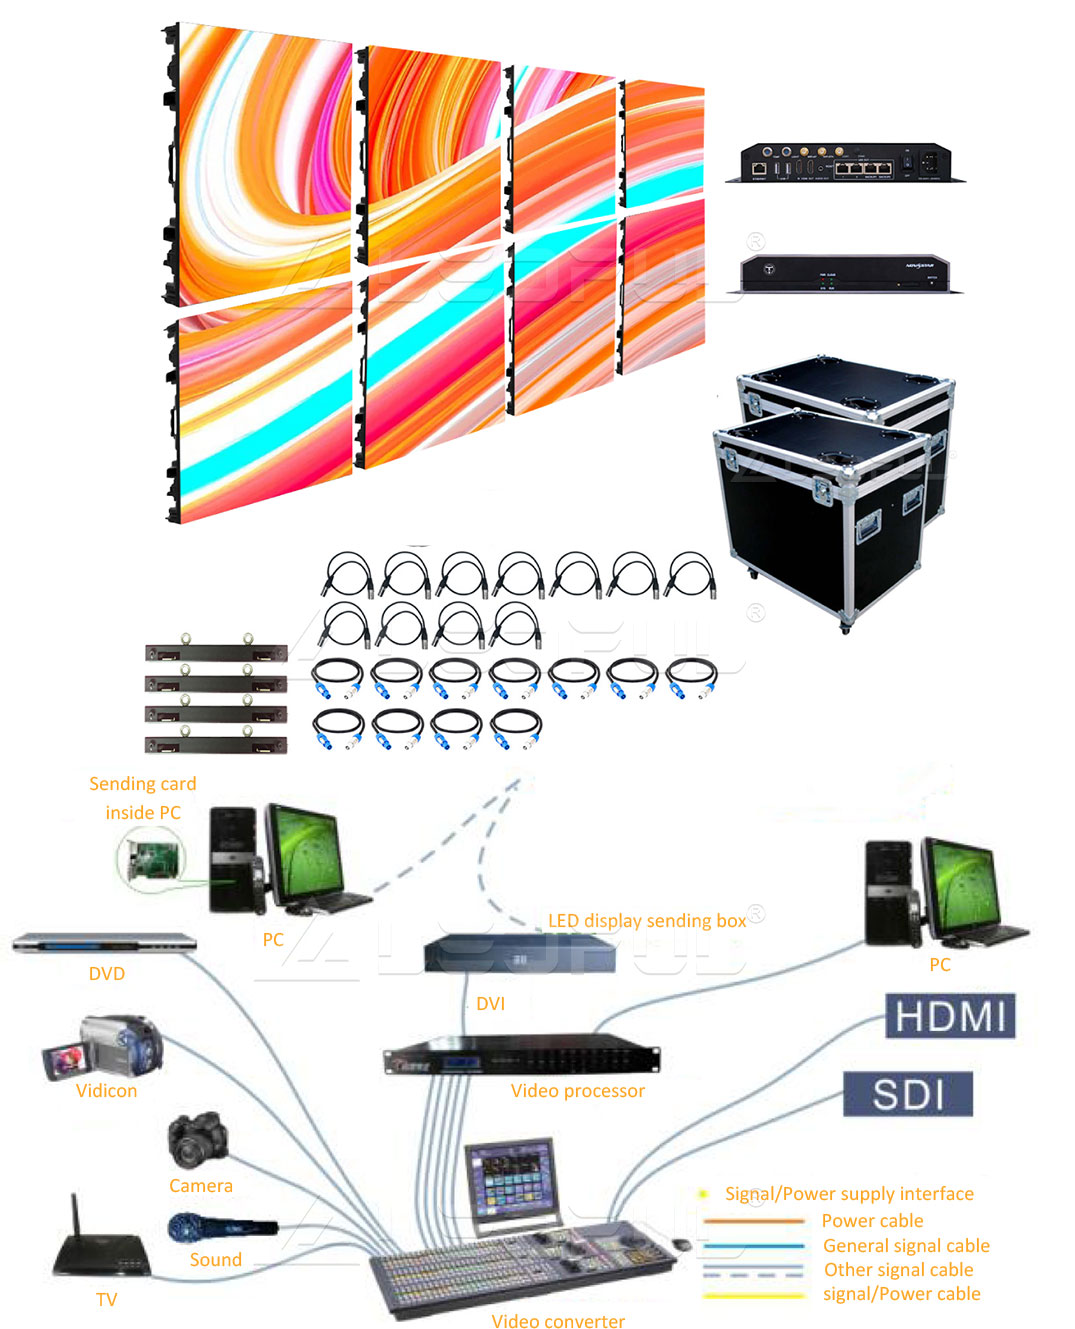 Hardware-Verbindungs diagramm